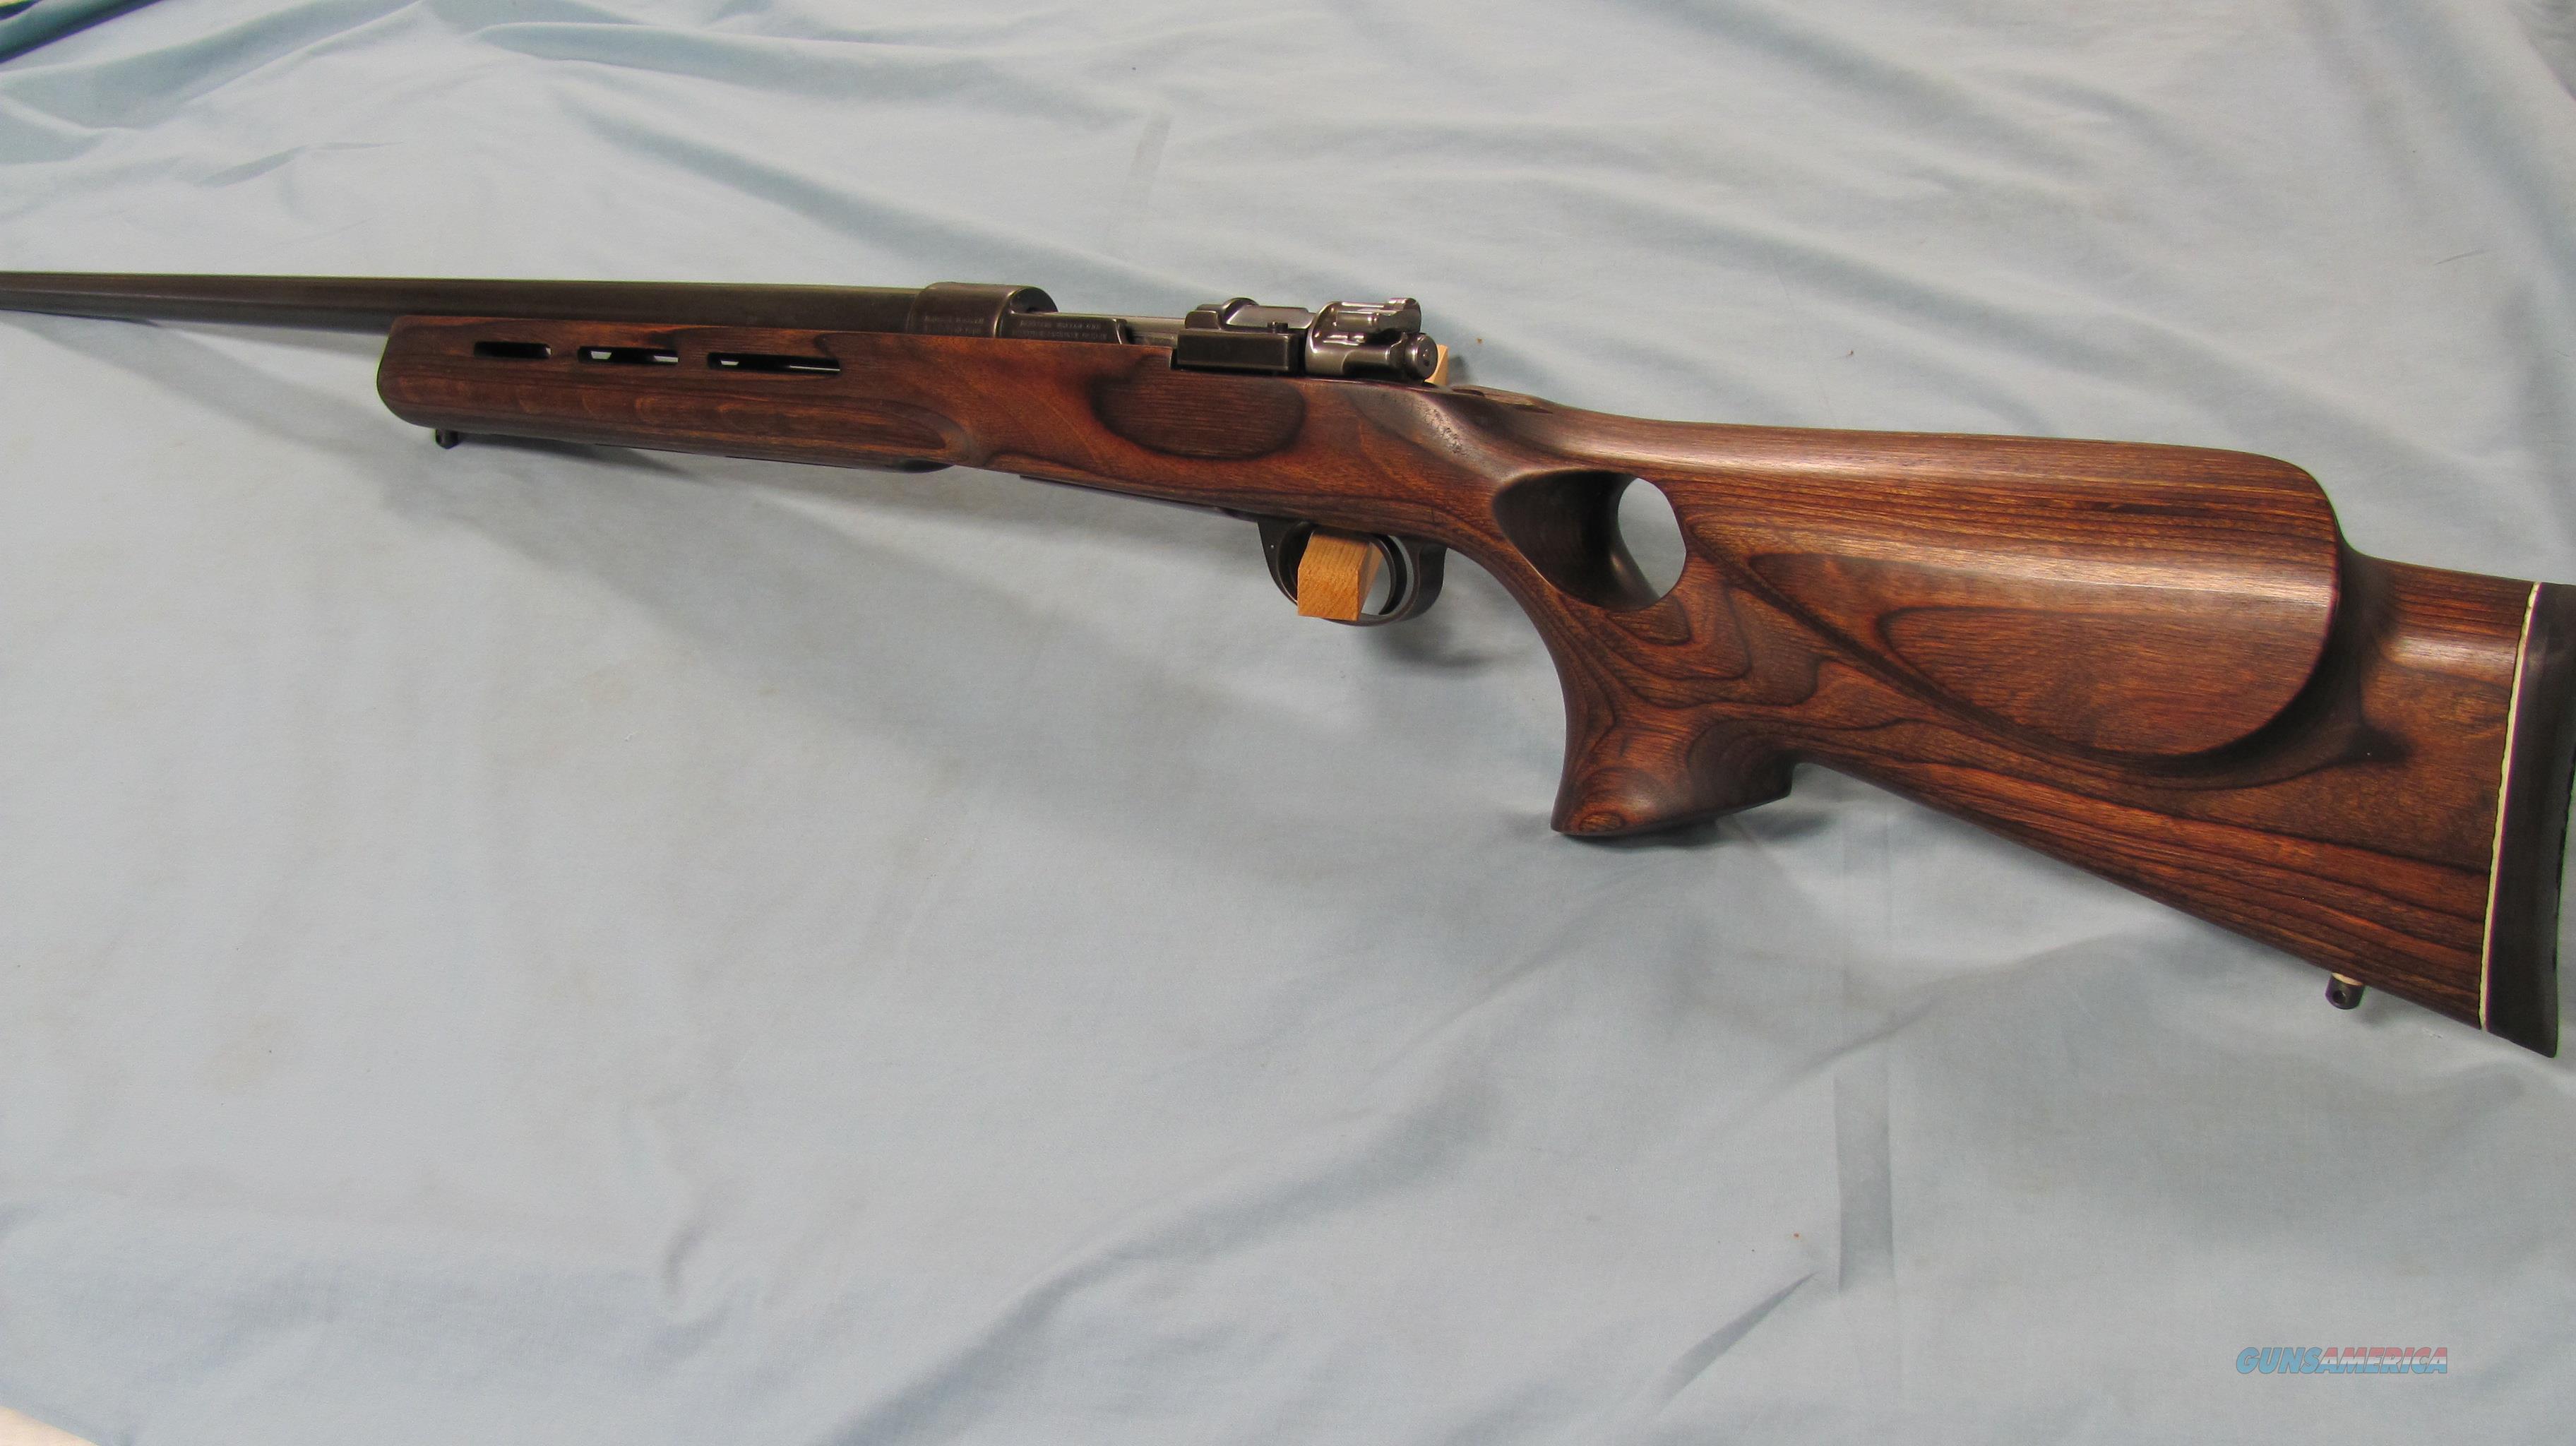 1891 argentine mauser rifle scope mount